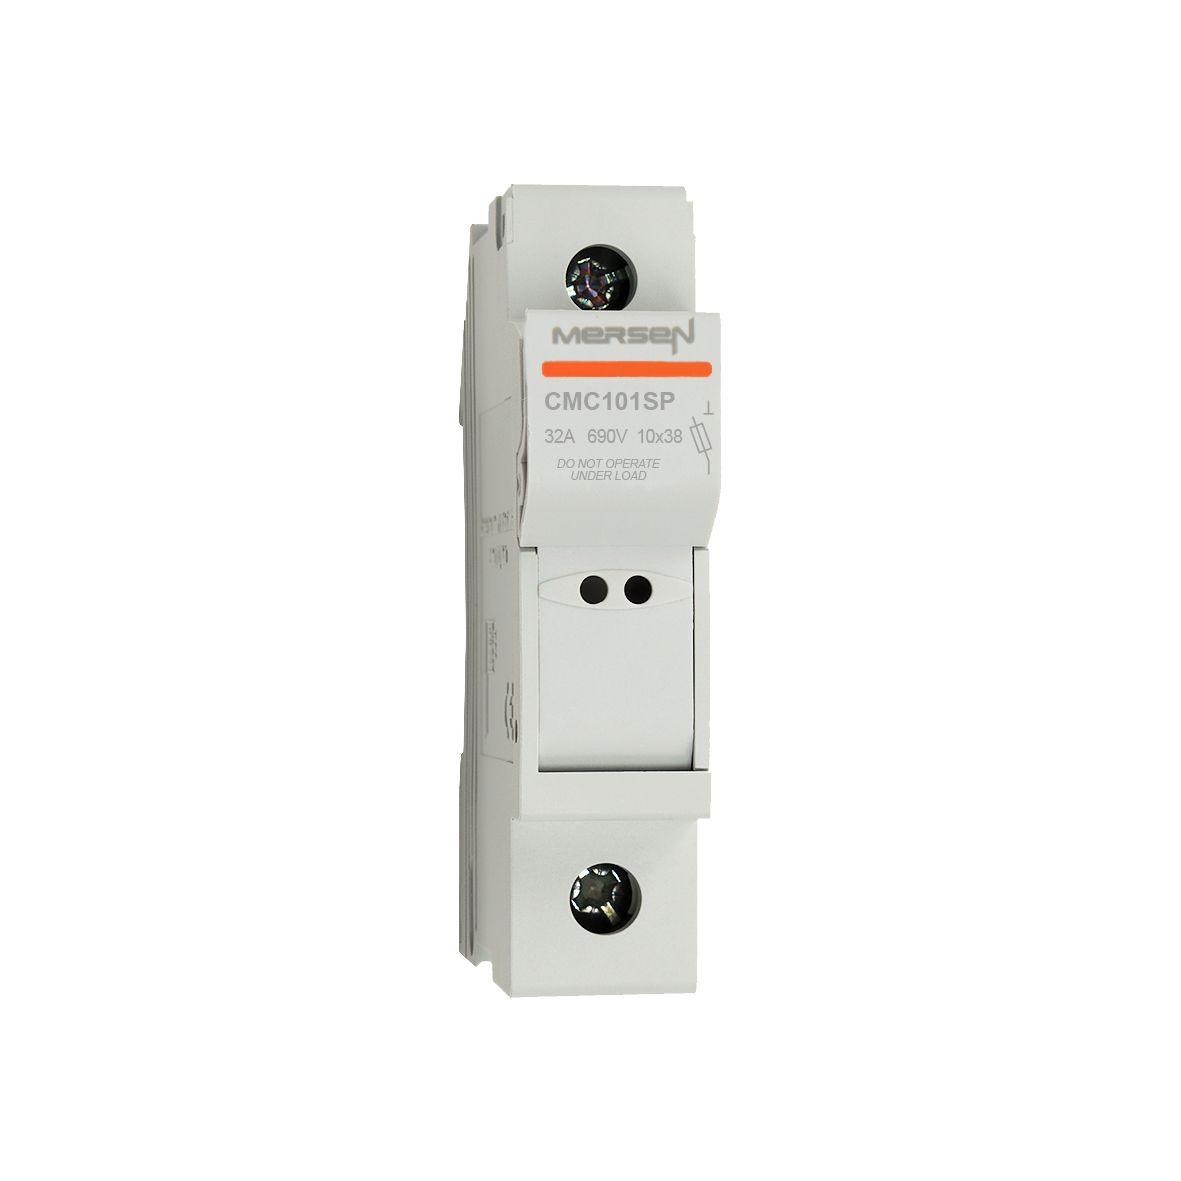 Y1062759 - modular fuse holder, IEC, 1-pole, 10x38, DIN rail mounting, IP20